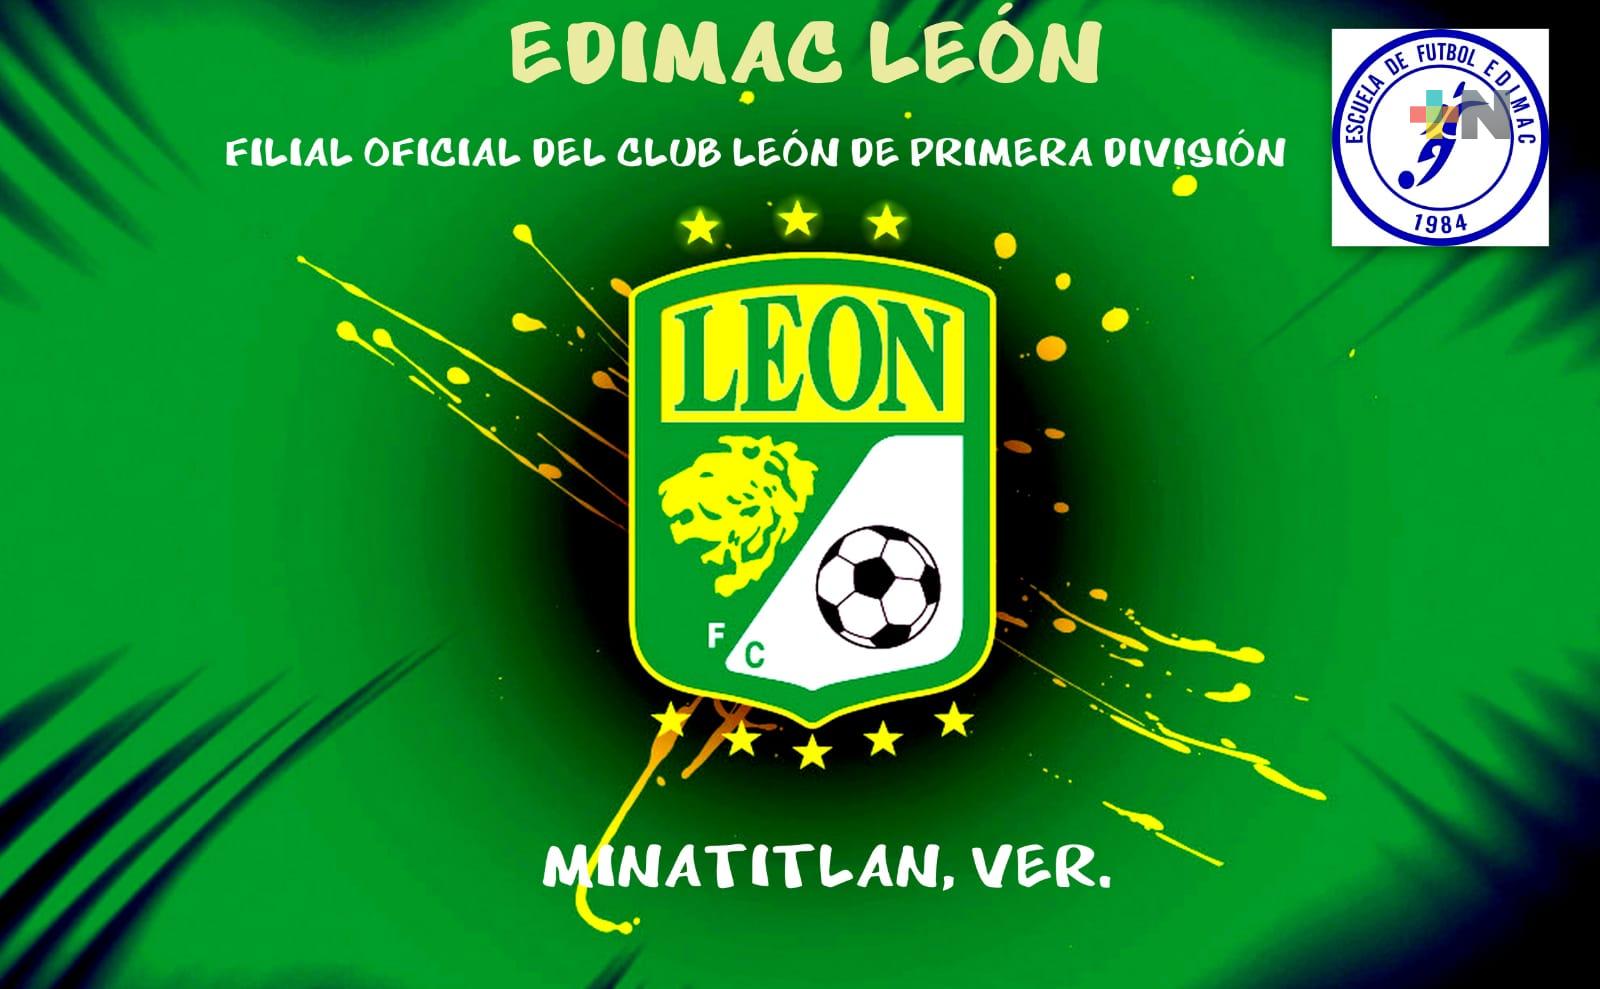 Club León tendrá escuela filial en Minatitlán